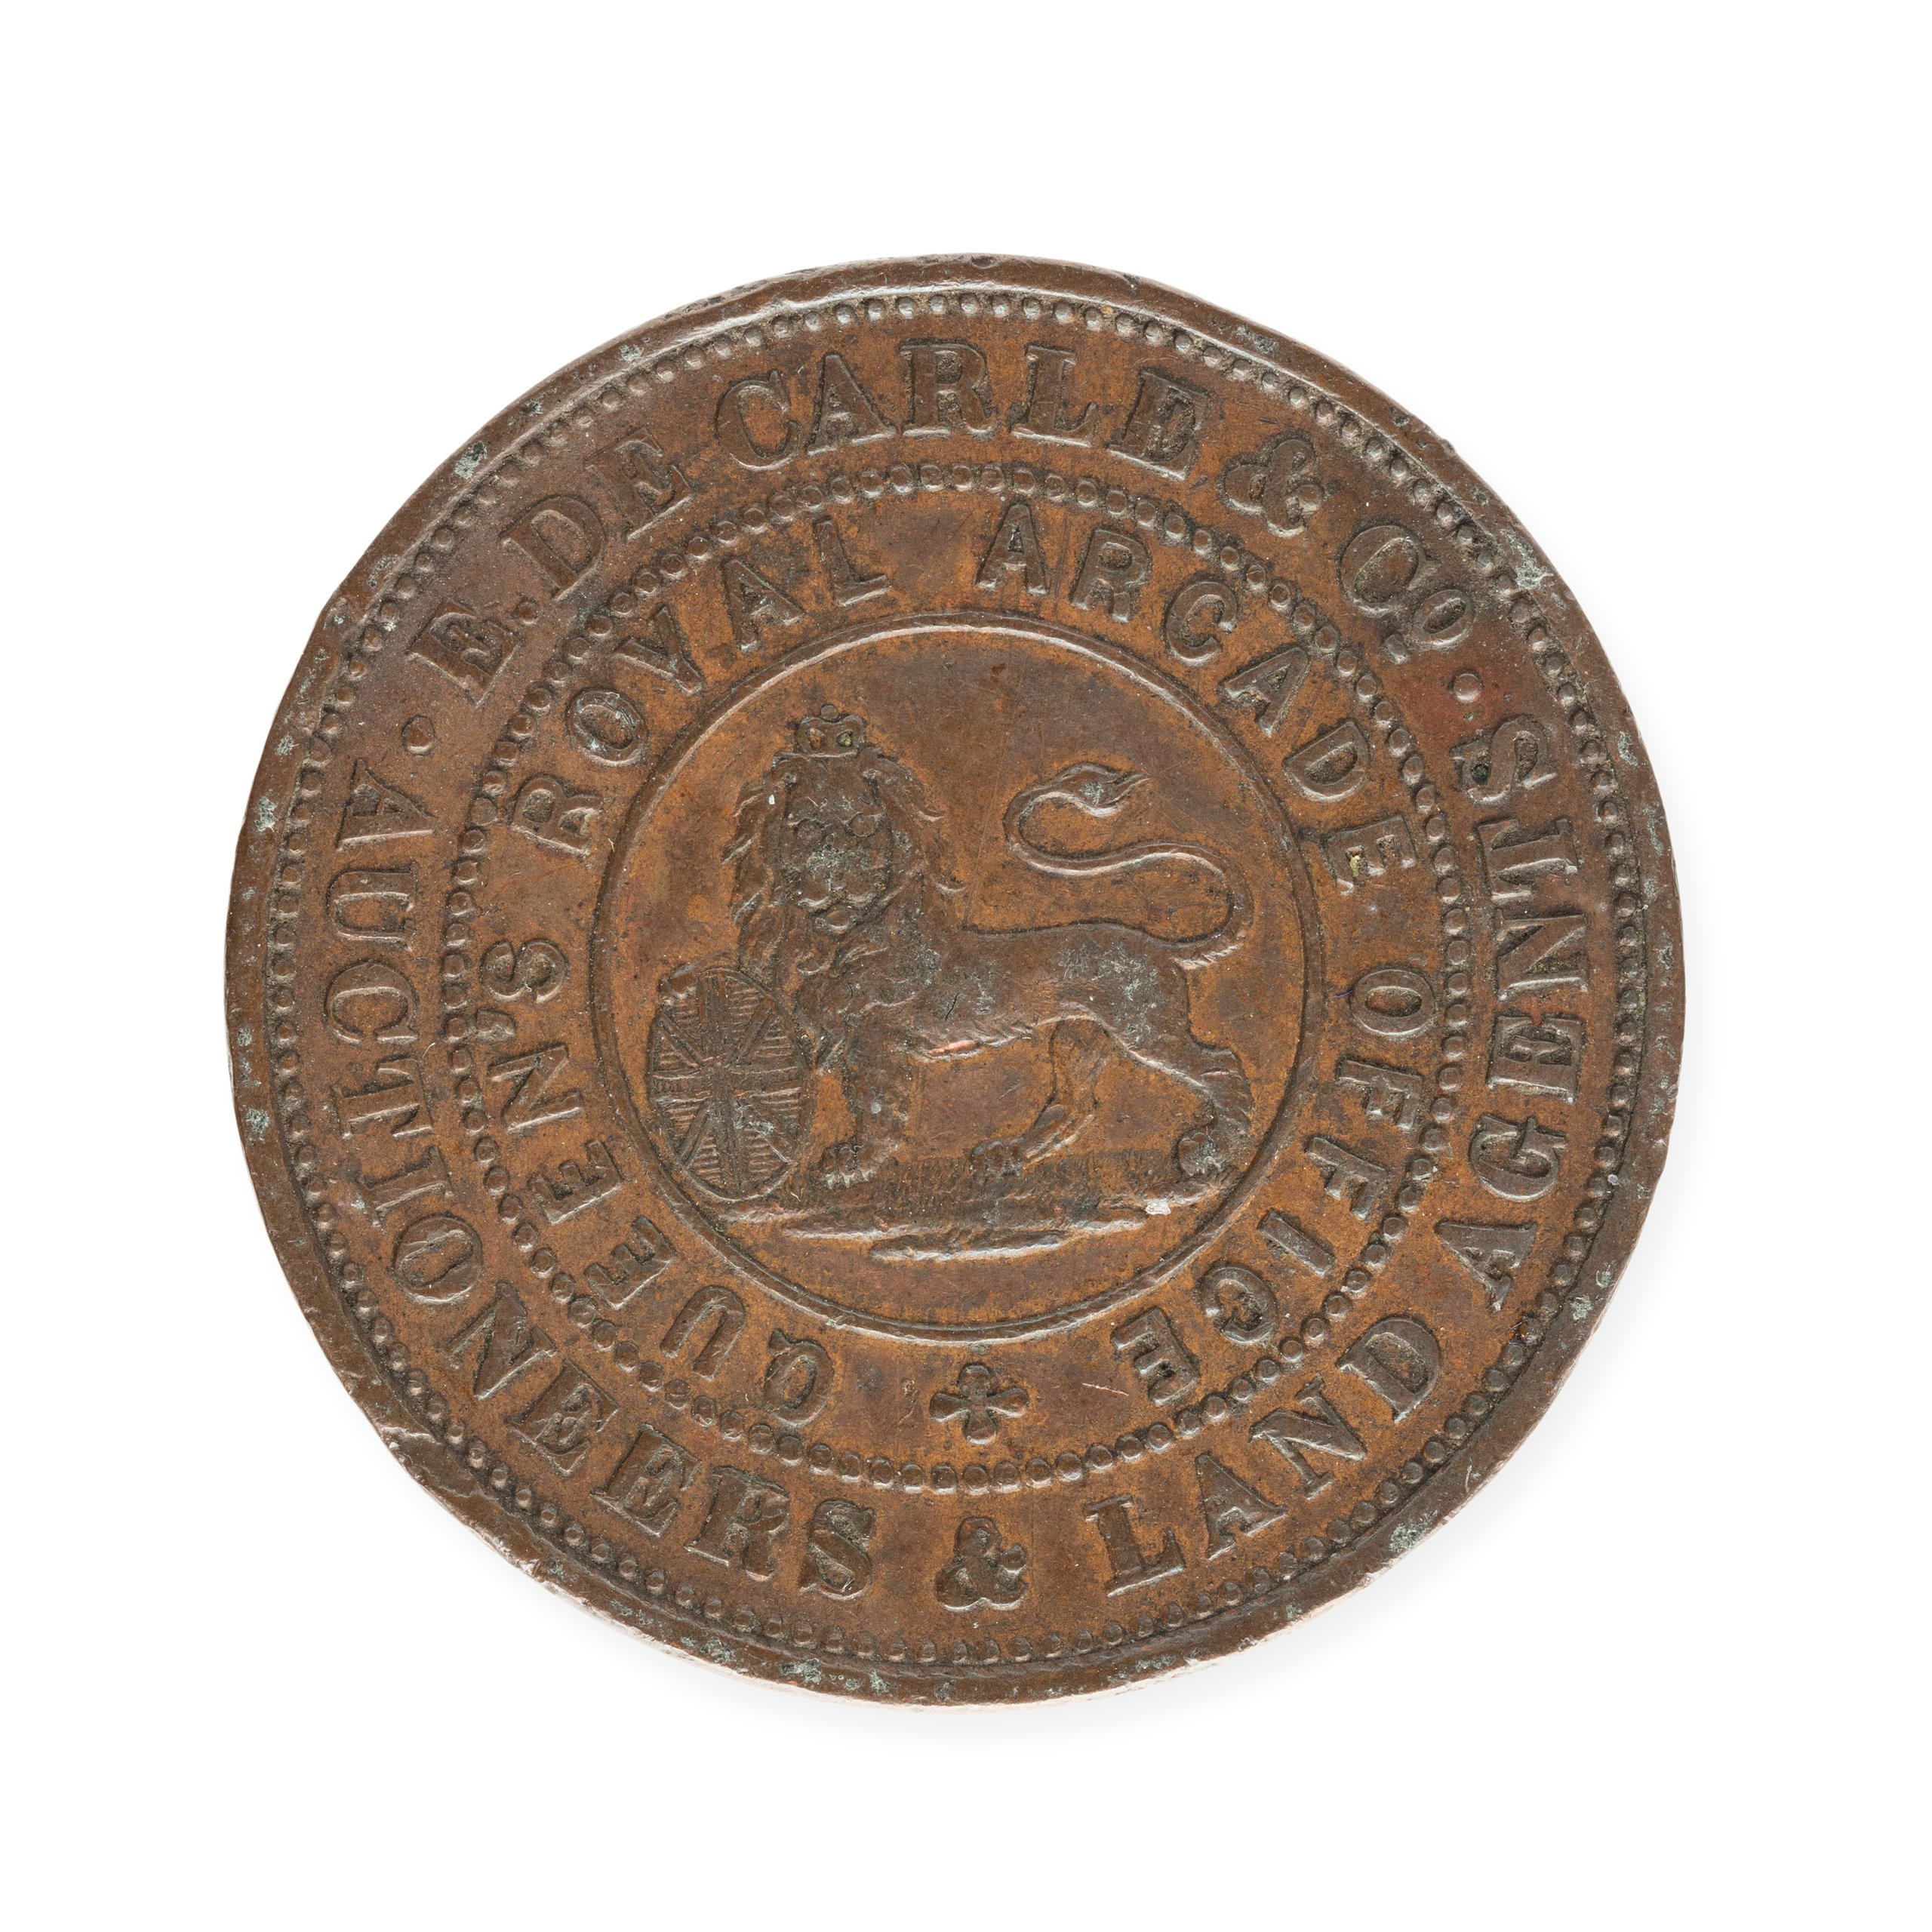 Australia penny token for E. De Carle & Co